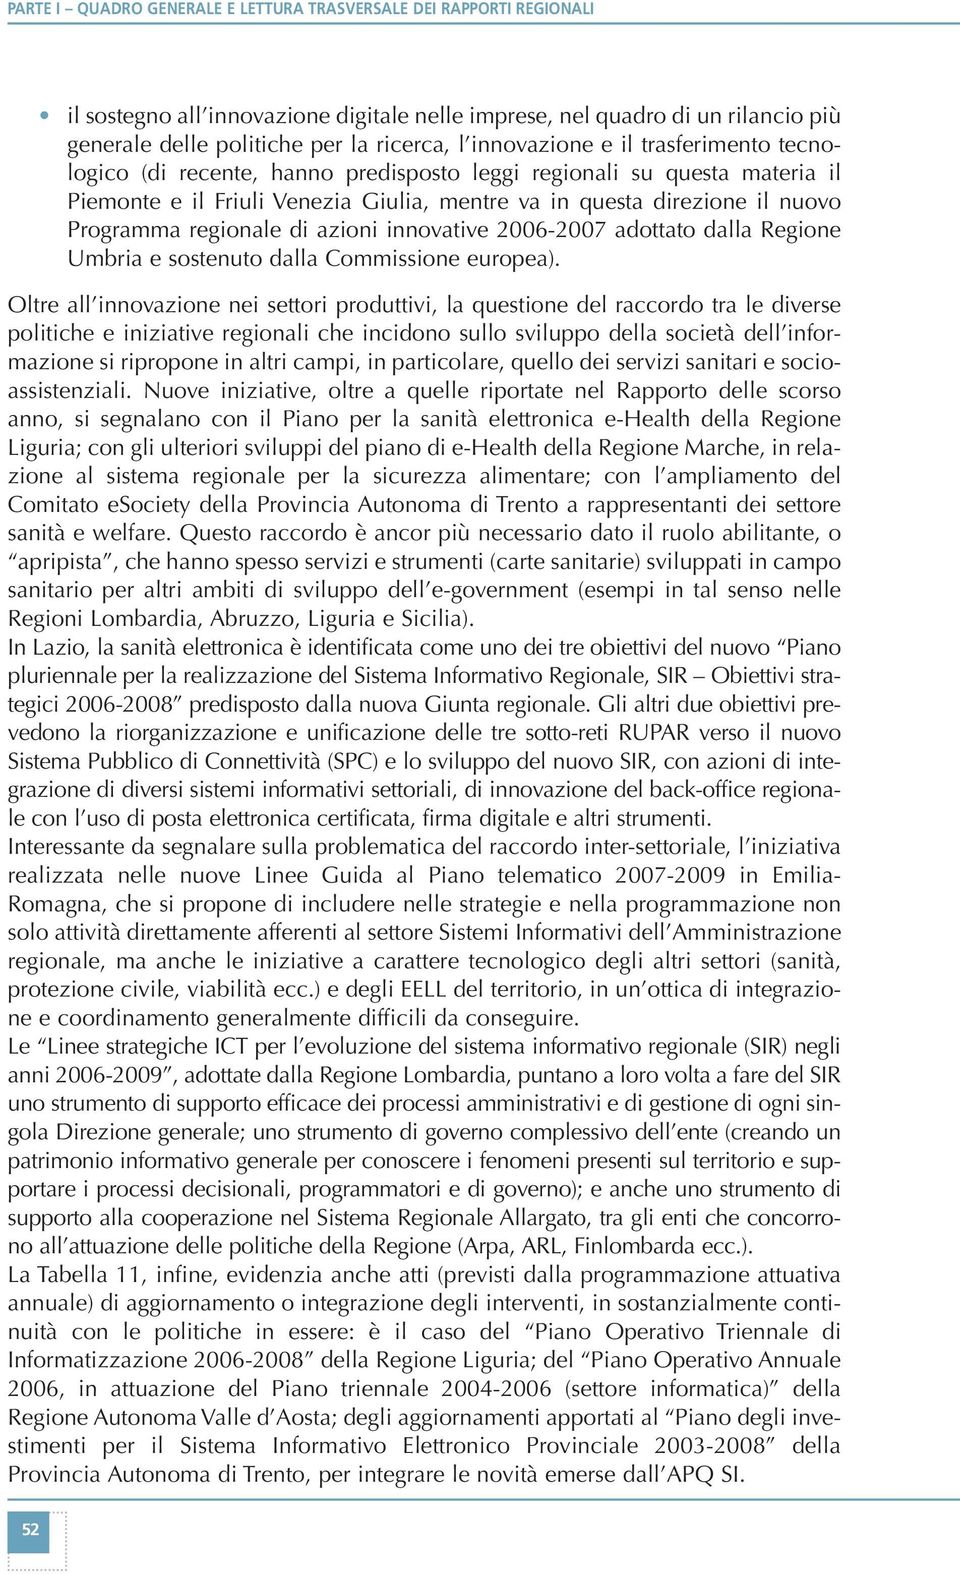 regionale di azioni innovative 2006-2007 adottato dalla Regione Umbria e sostenuto dalla Commissione europea).